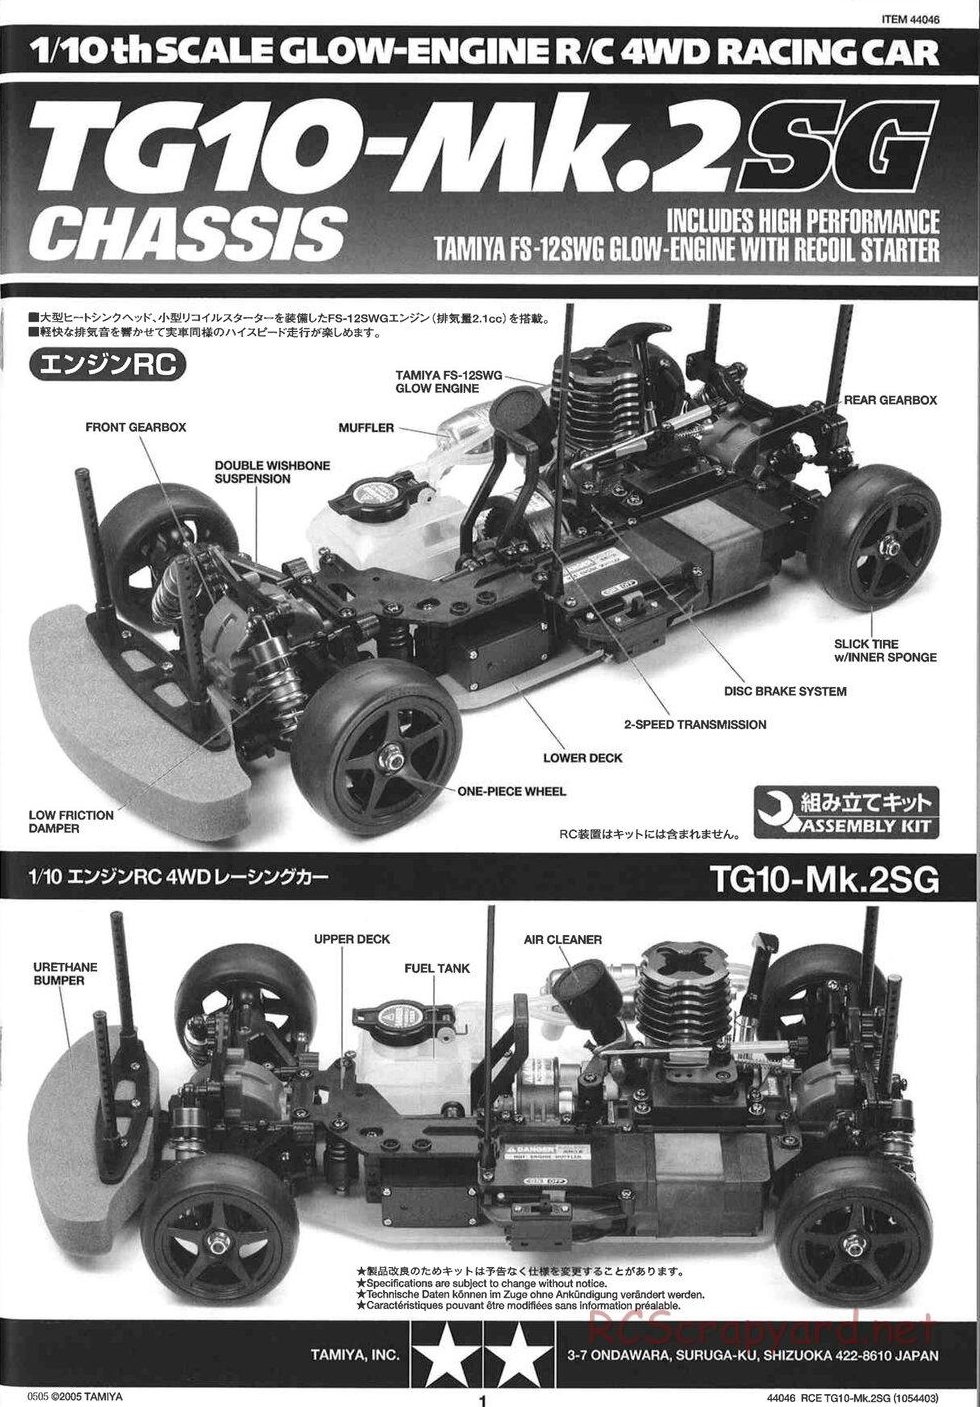 Tamiya - TG10 Mk.2SG Chassis - Manual - Page 1